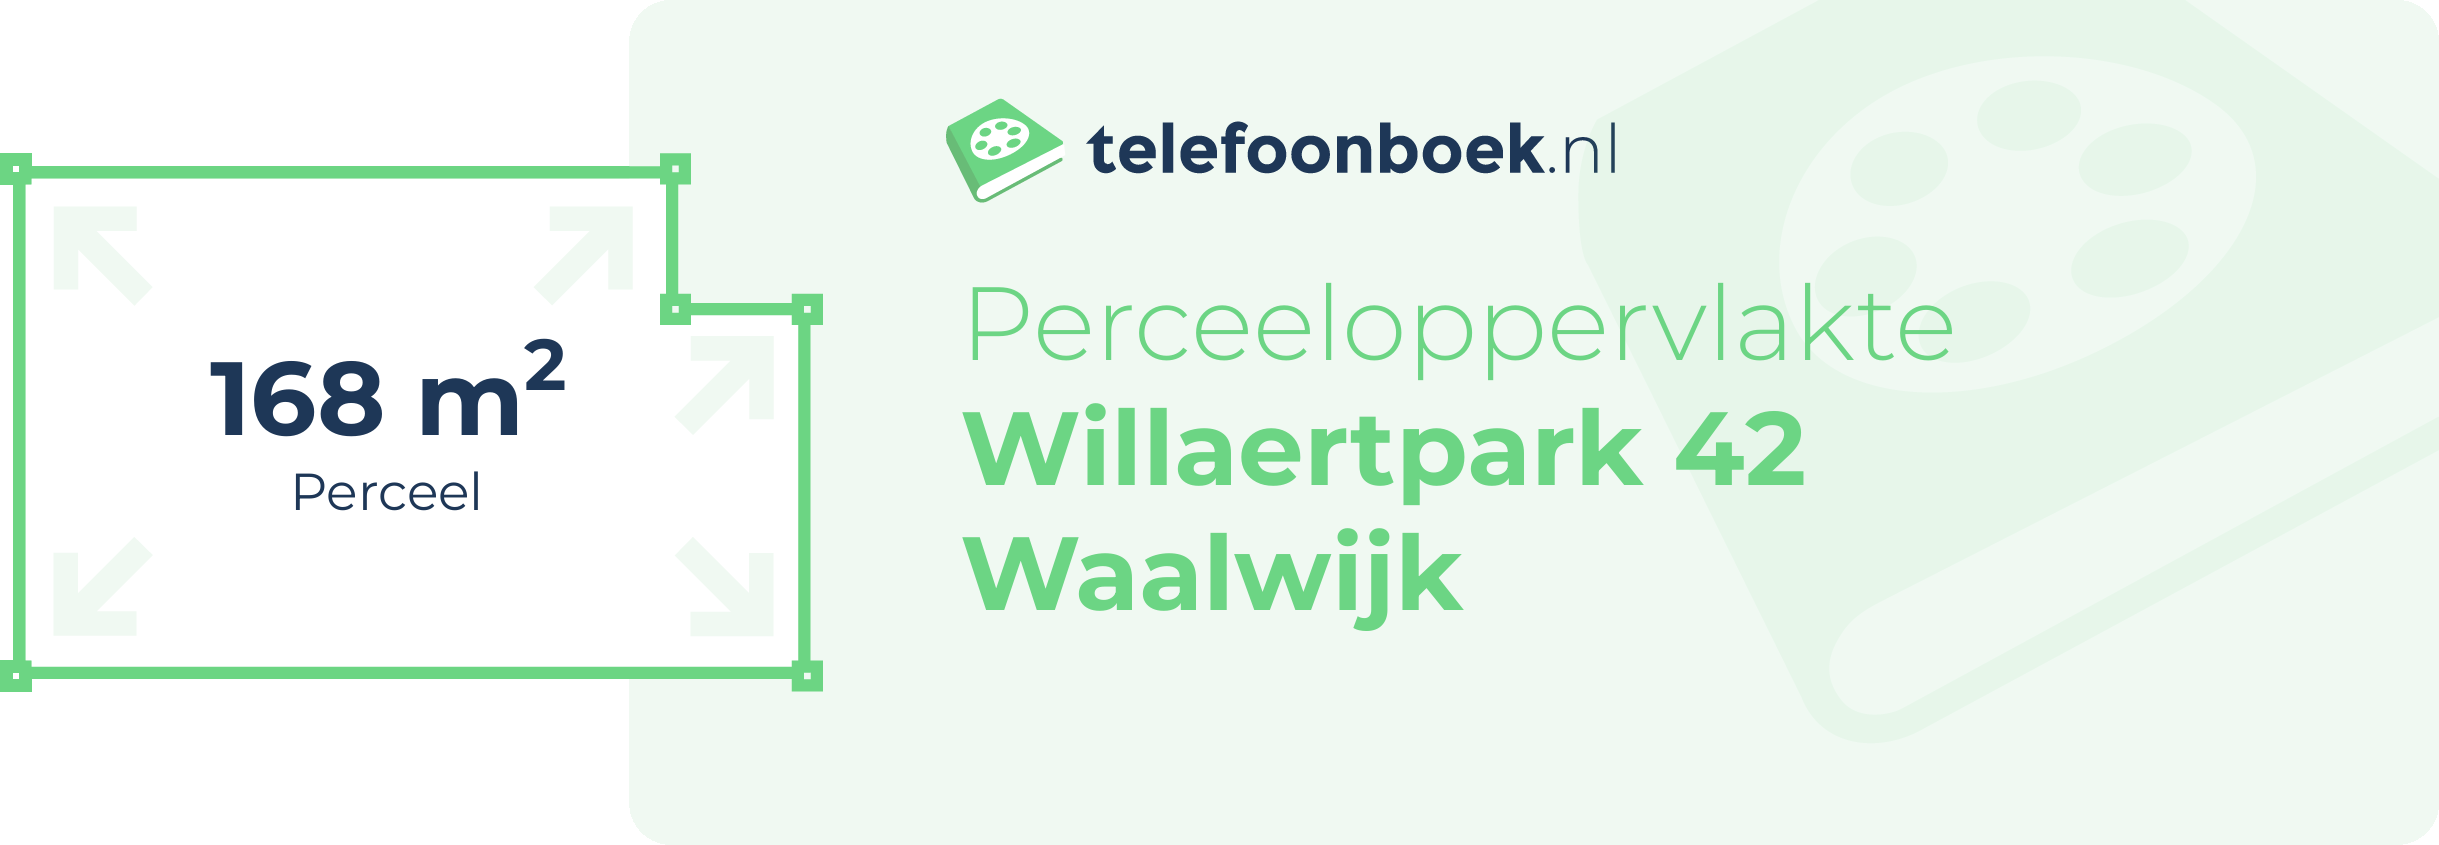 Perceeloppervlakte Willaertpark 42 Waalwijk